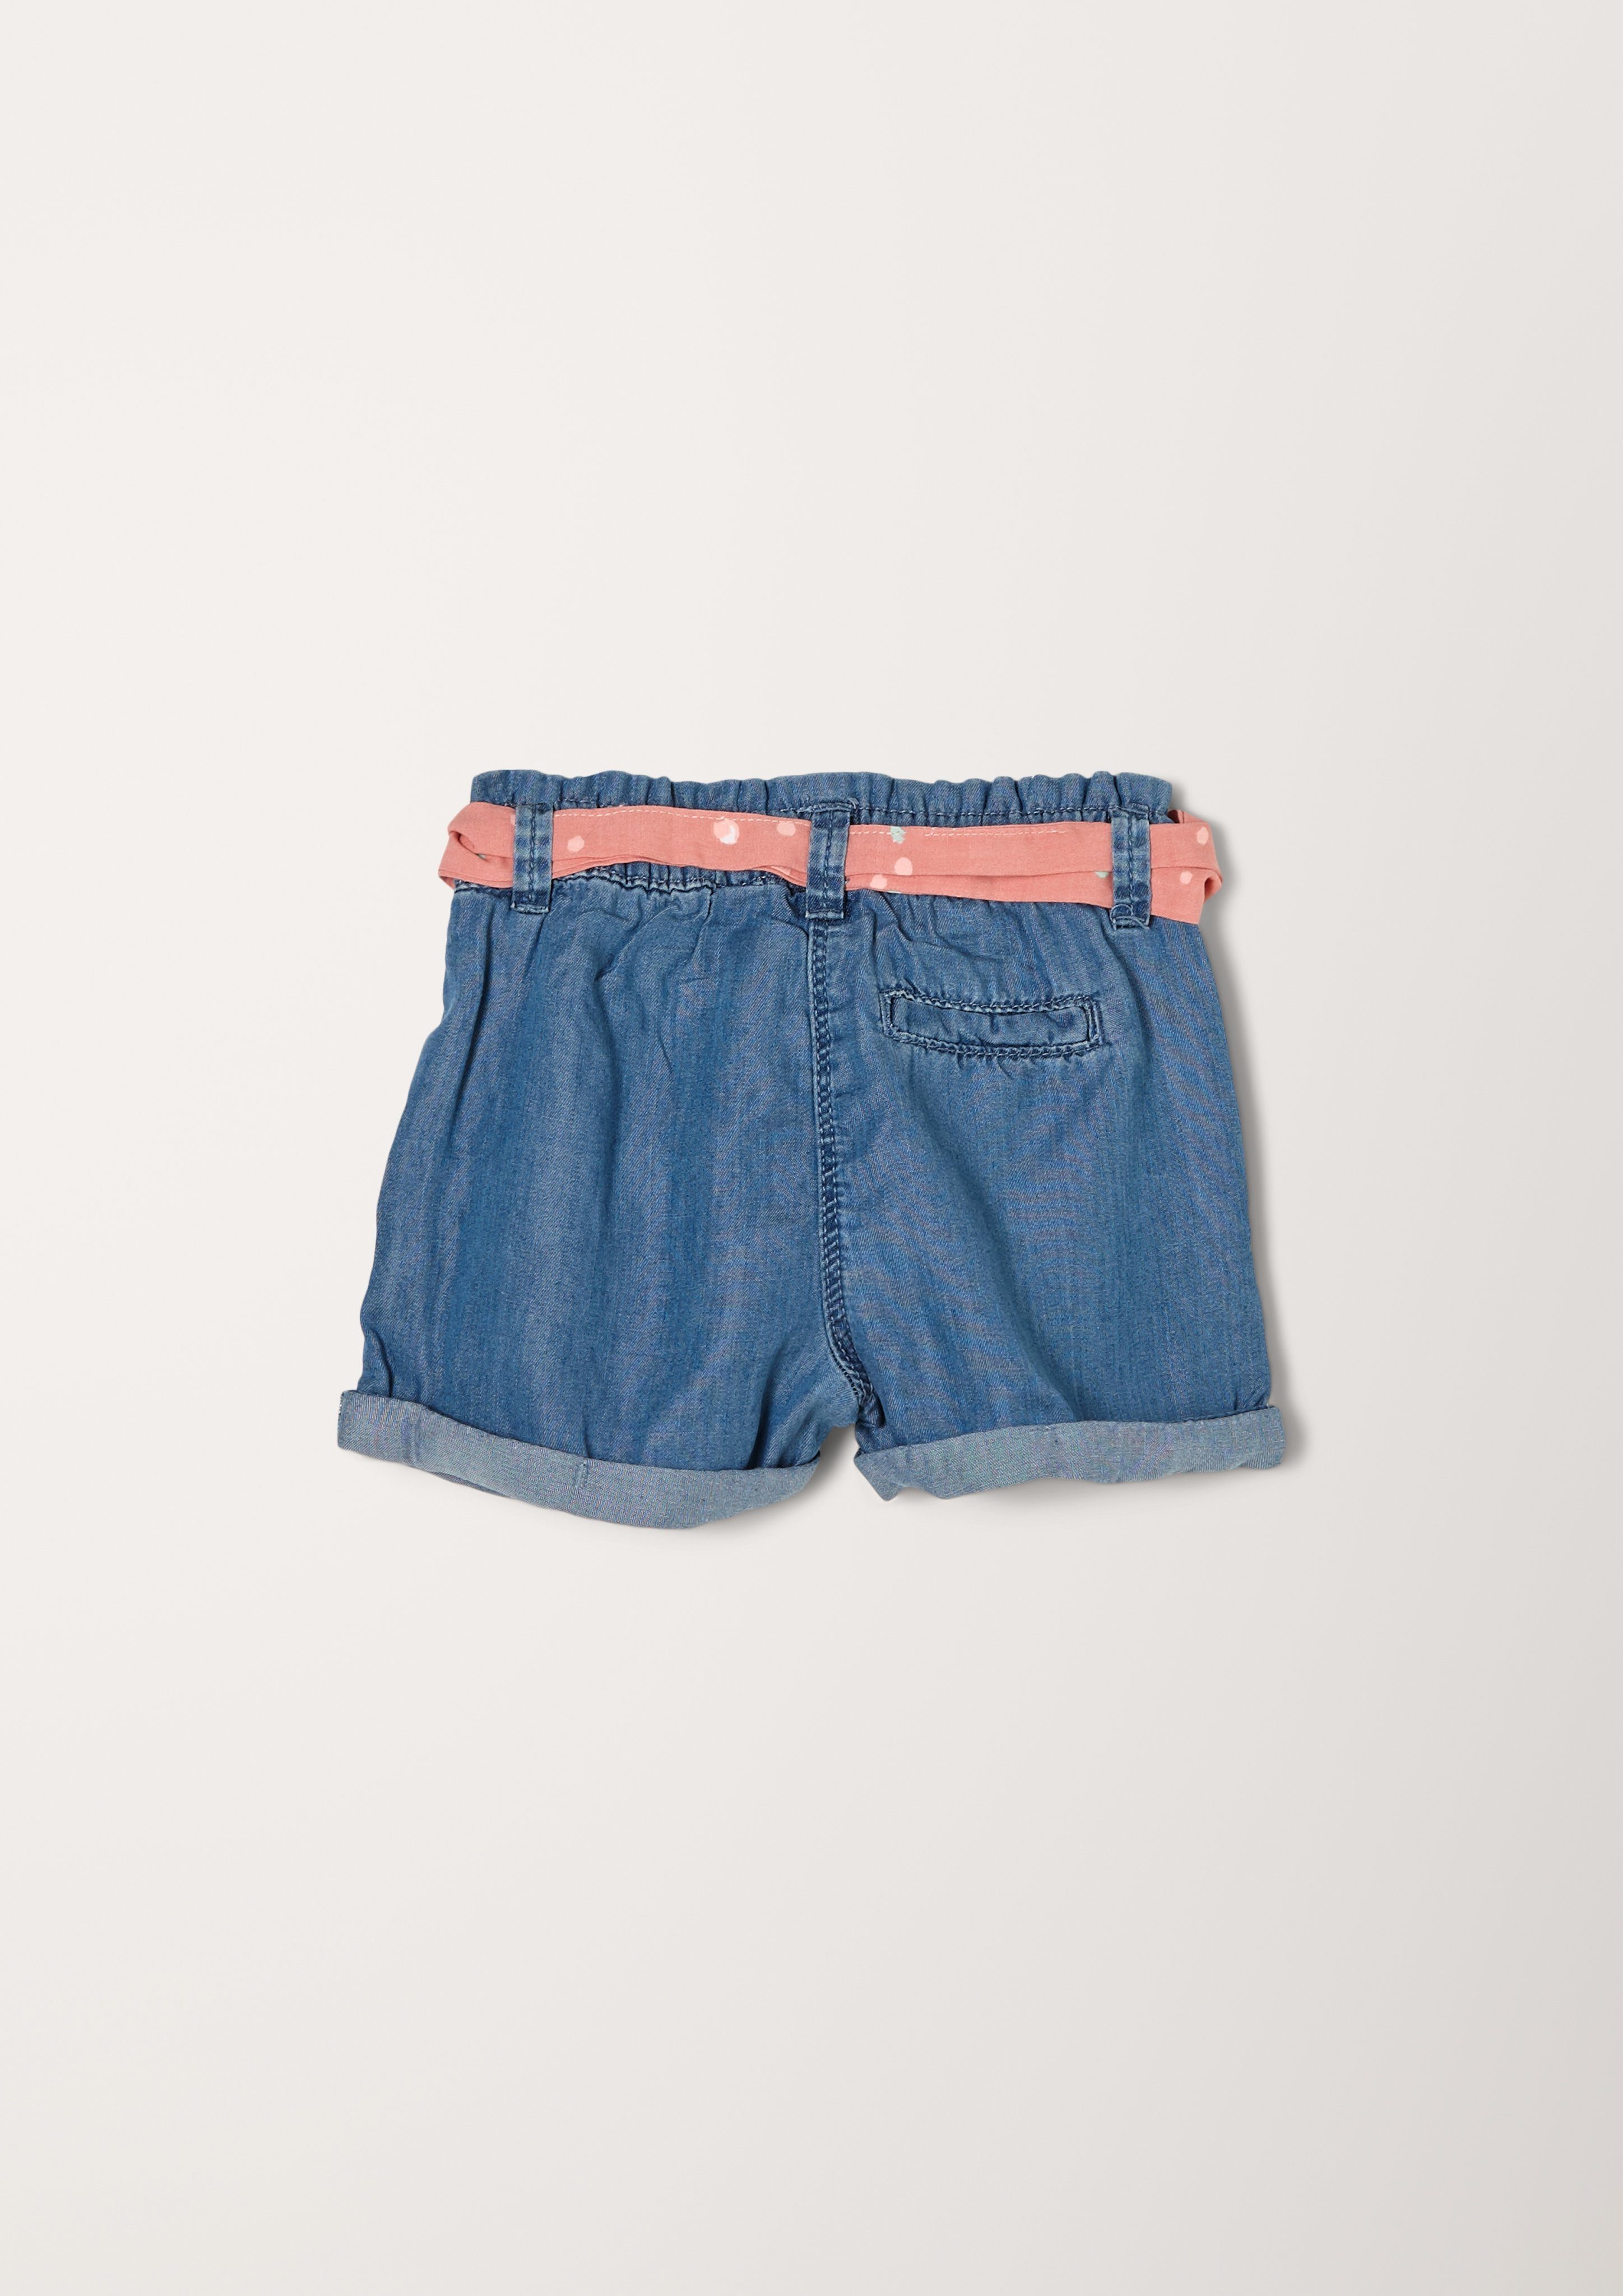 Kinder Mädchen (Gr. 50 - 92) s.Oliver 7/8-Jeans Lyocell-Shorts mit Bindegürtel